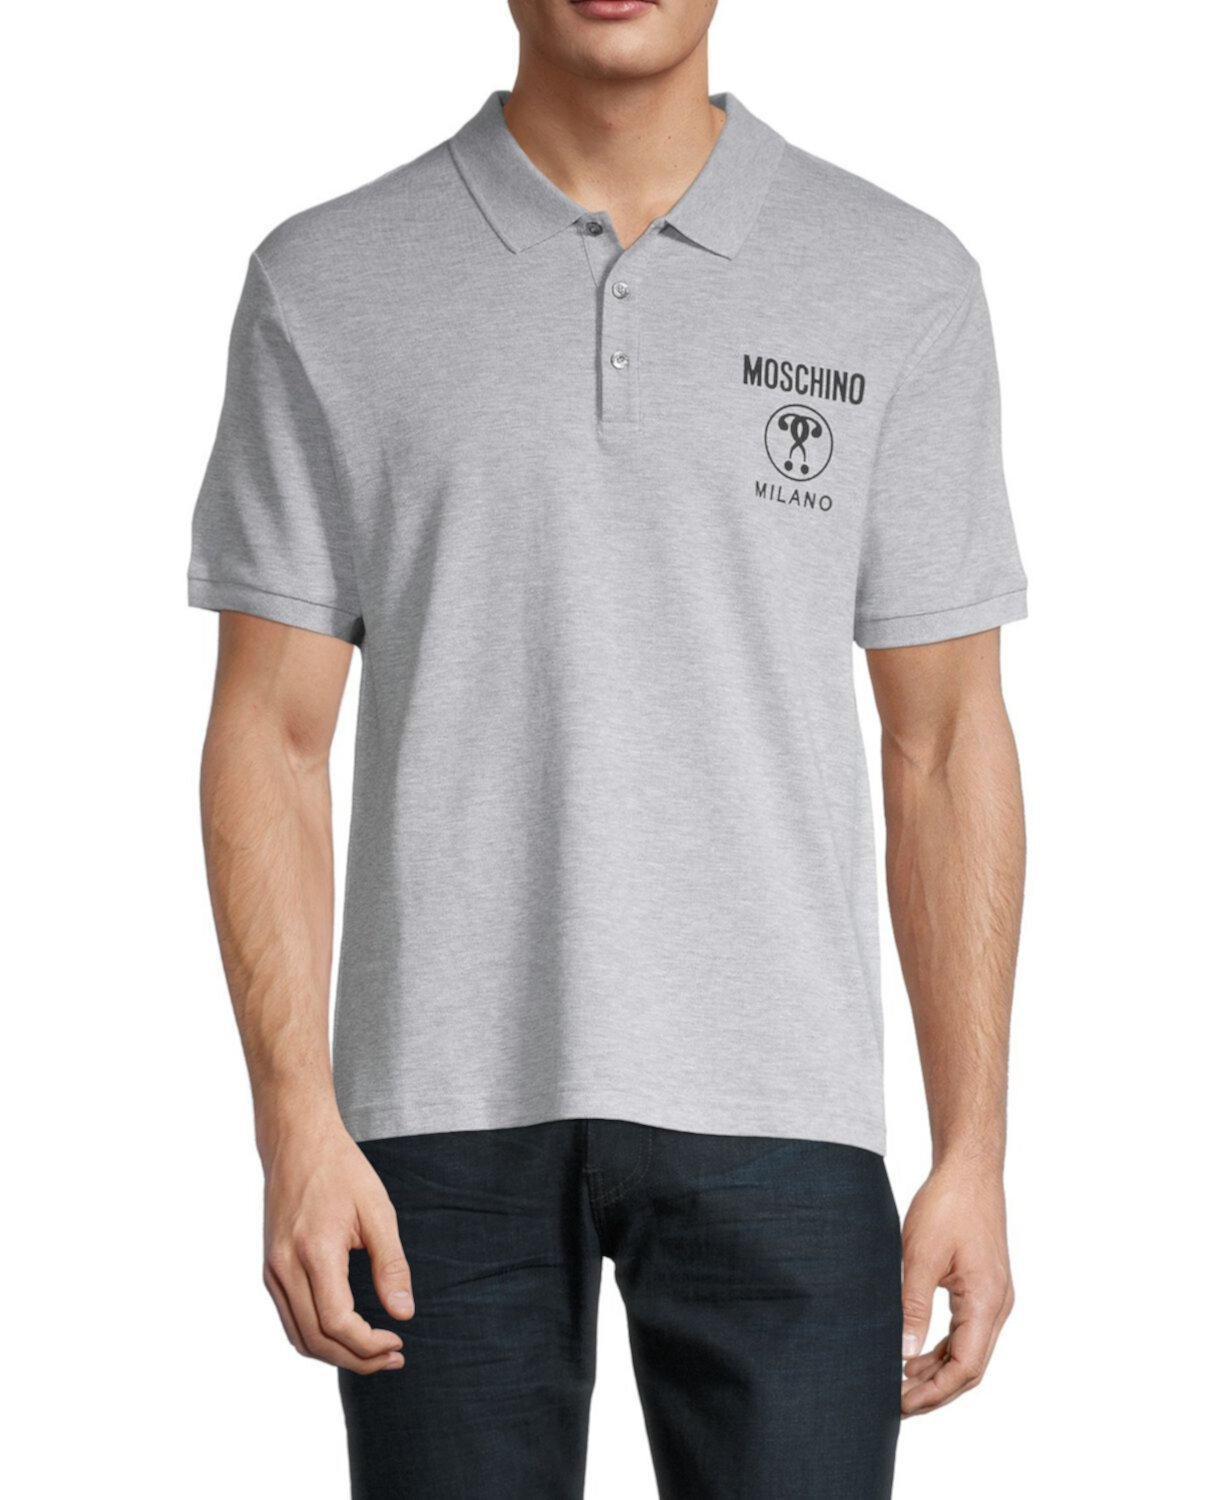 Рубашка-поло стандартного кроя с графическим логотипом Moschino